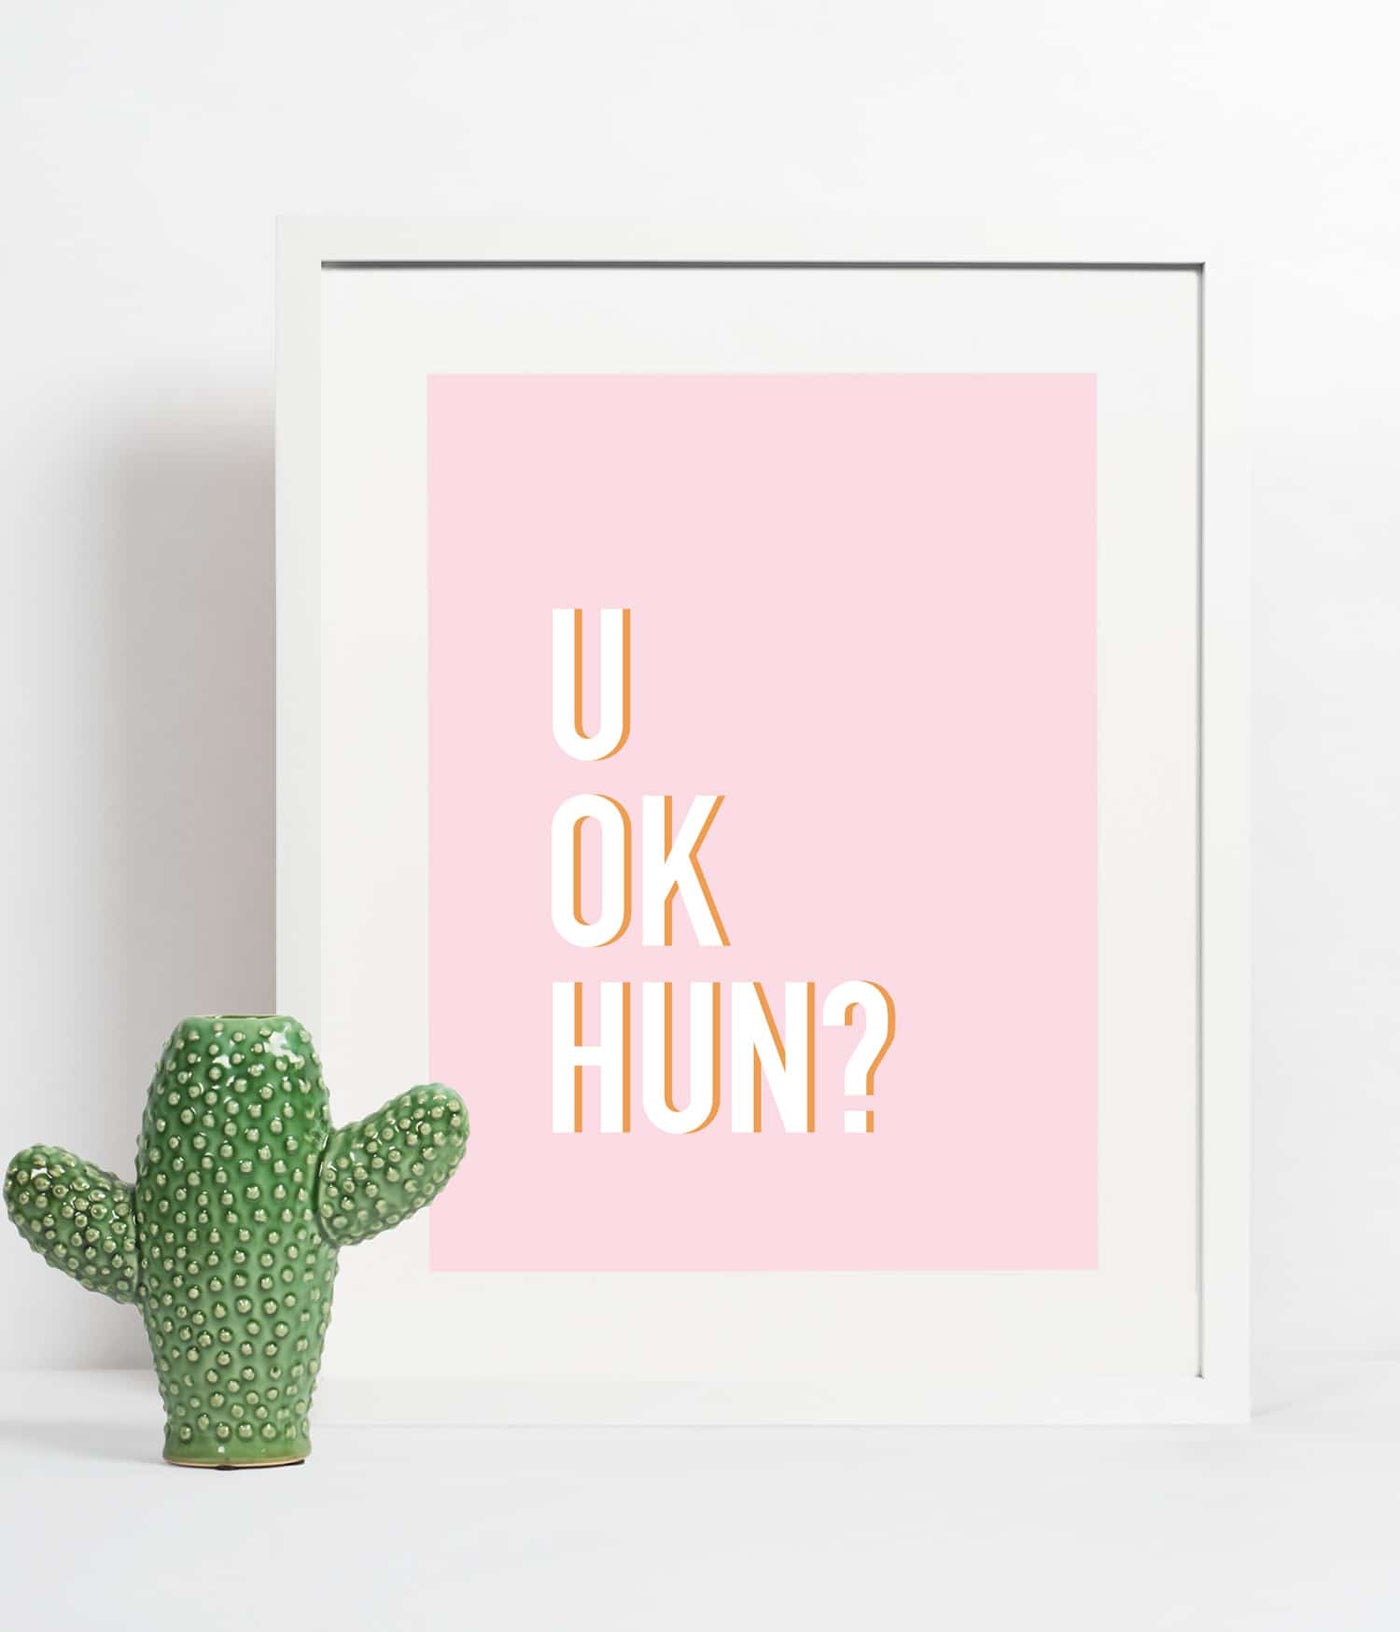 'U ok hun?' Print